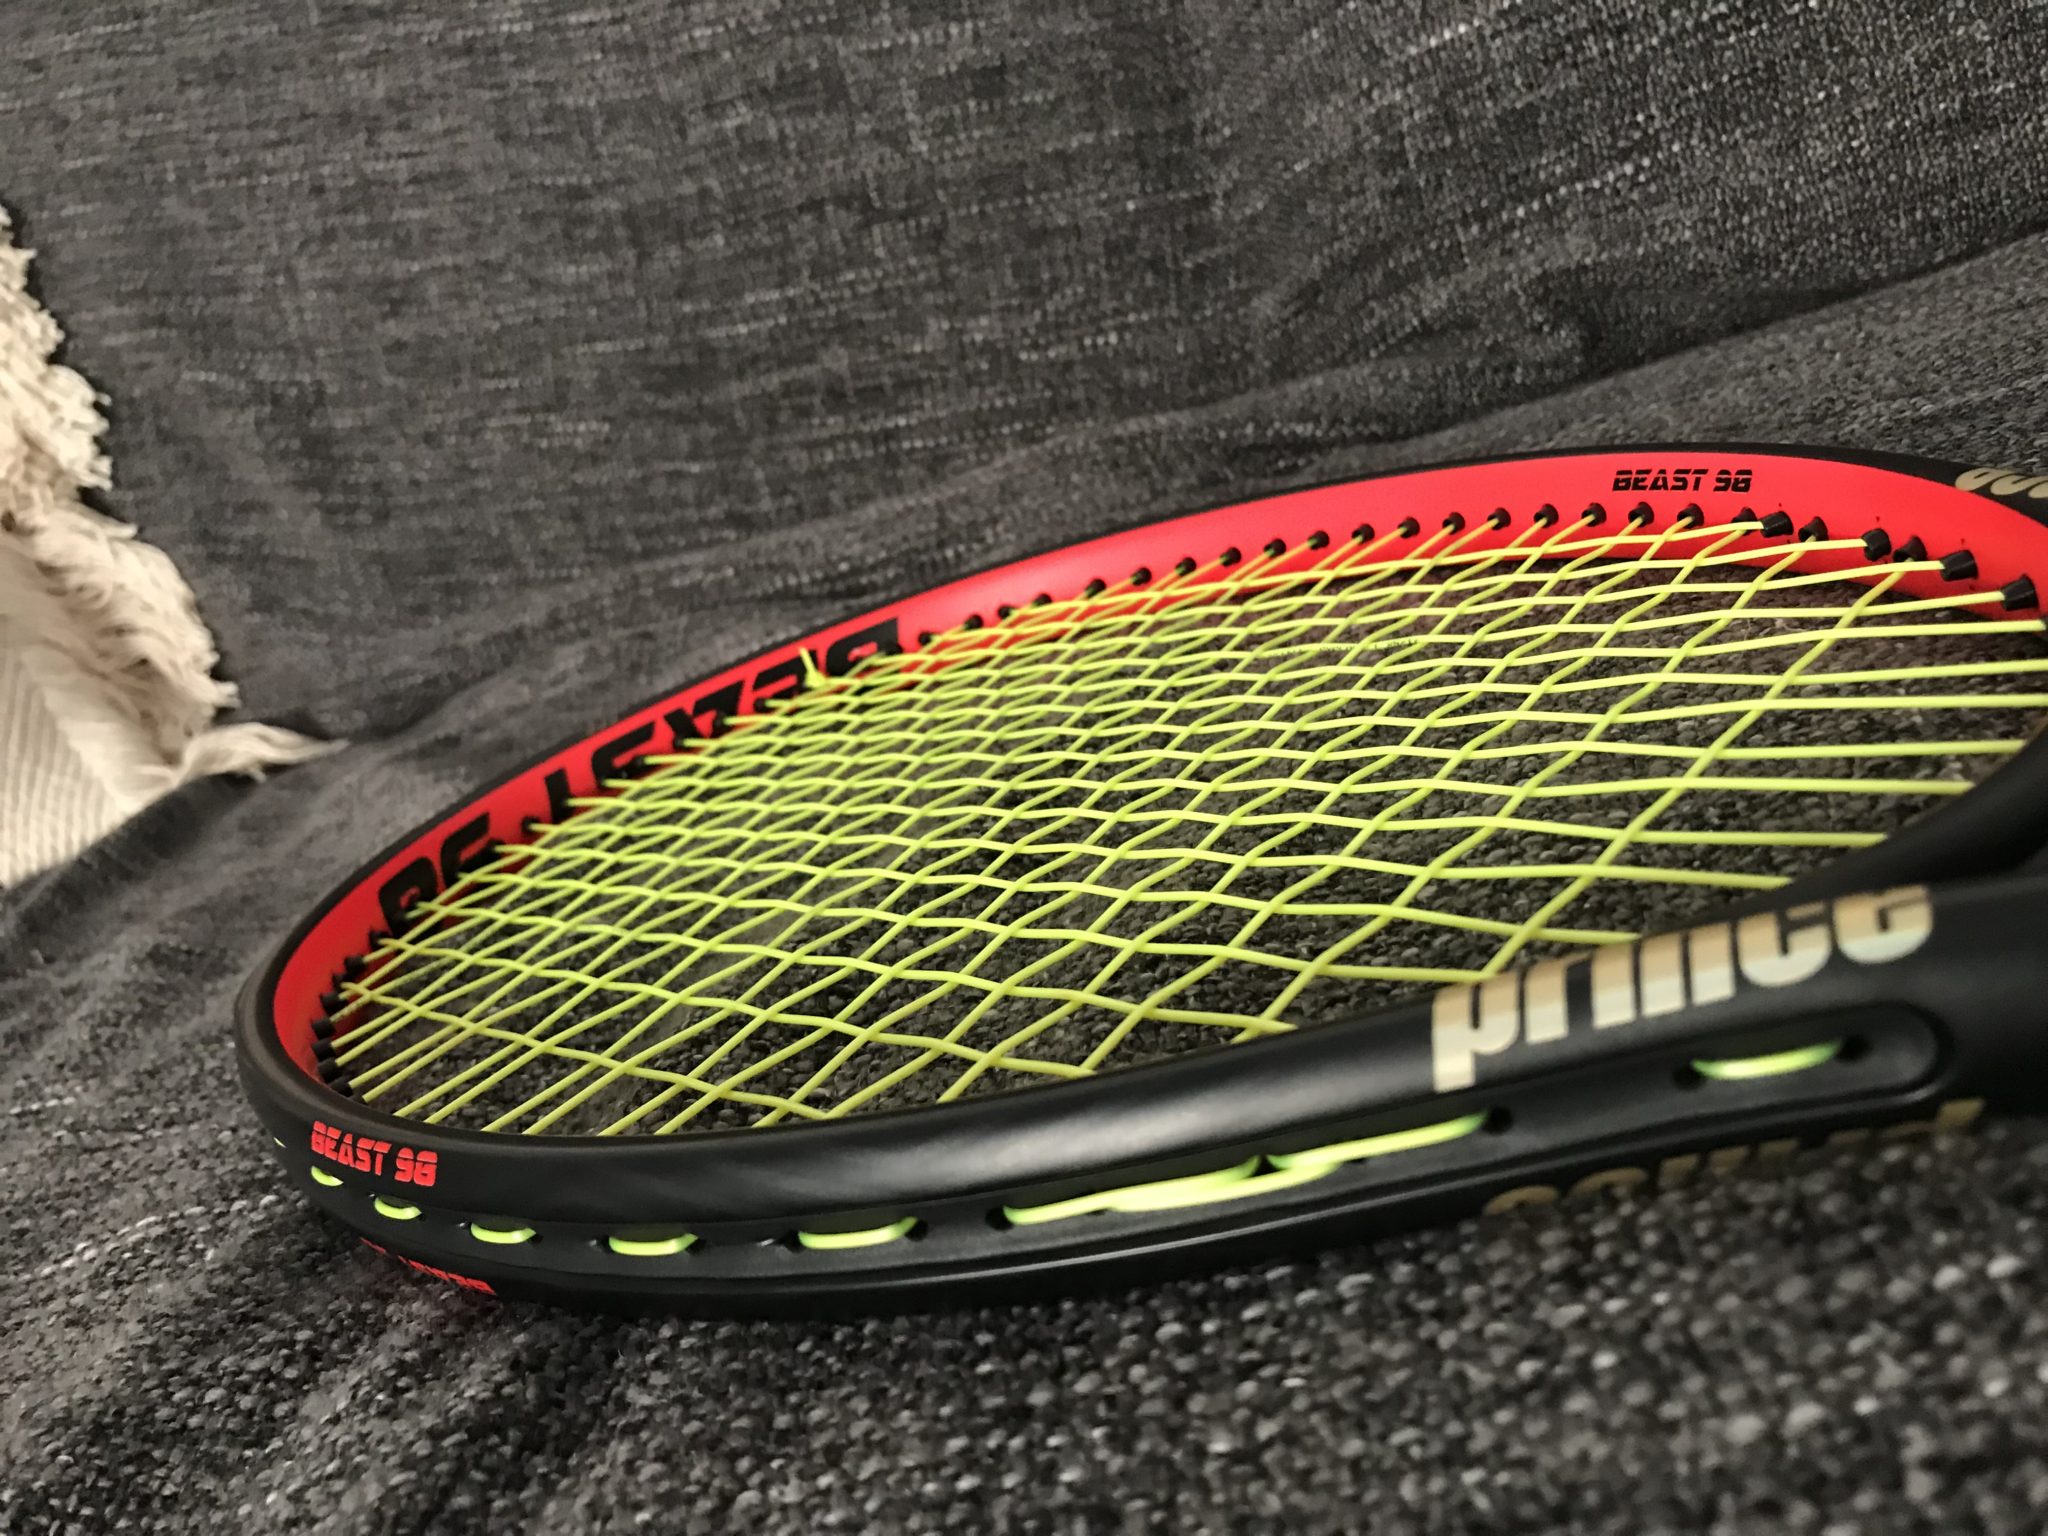 Prince Beast 98 Racquet Review - Tennisnerd Racquet Reviews